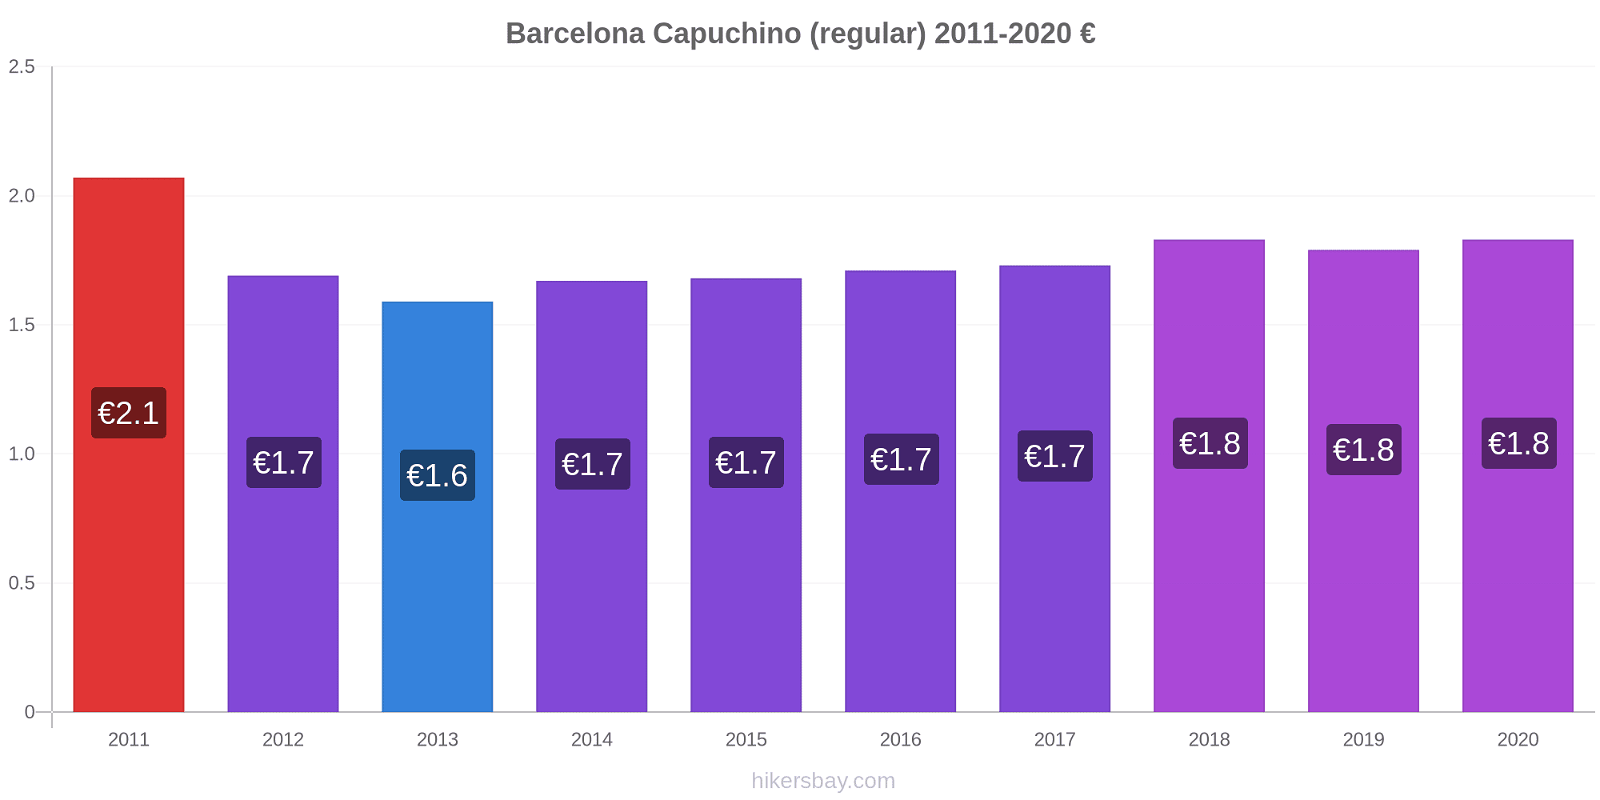 Barcelona cambios de precios Capuchino (regular) hikersbay.com